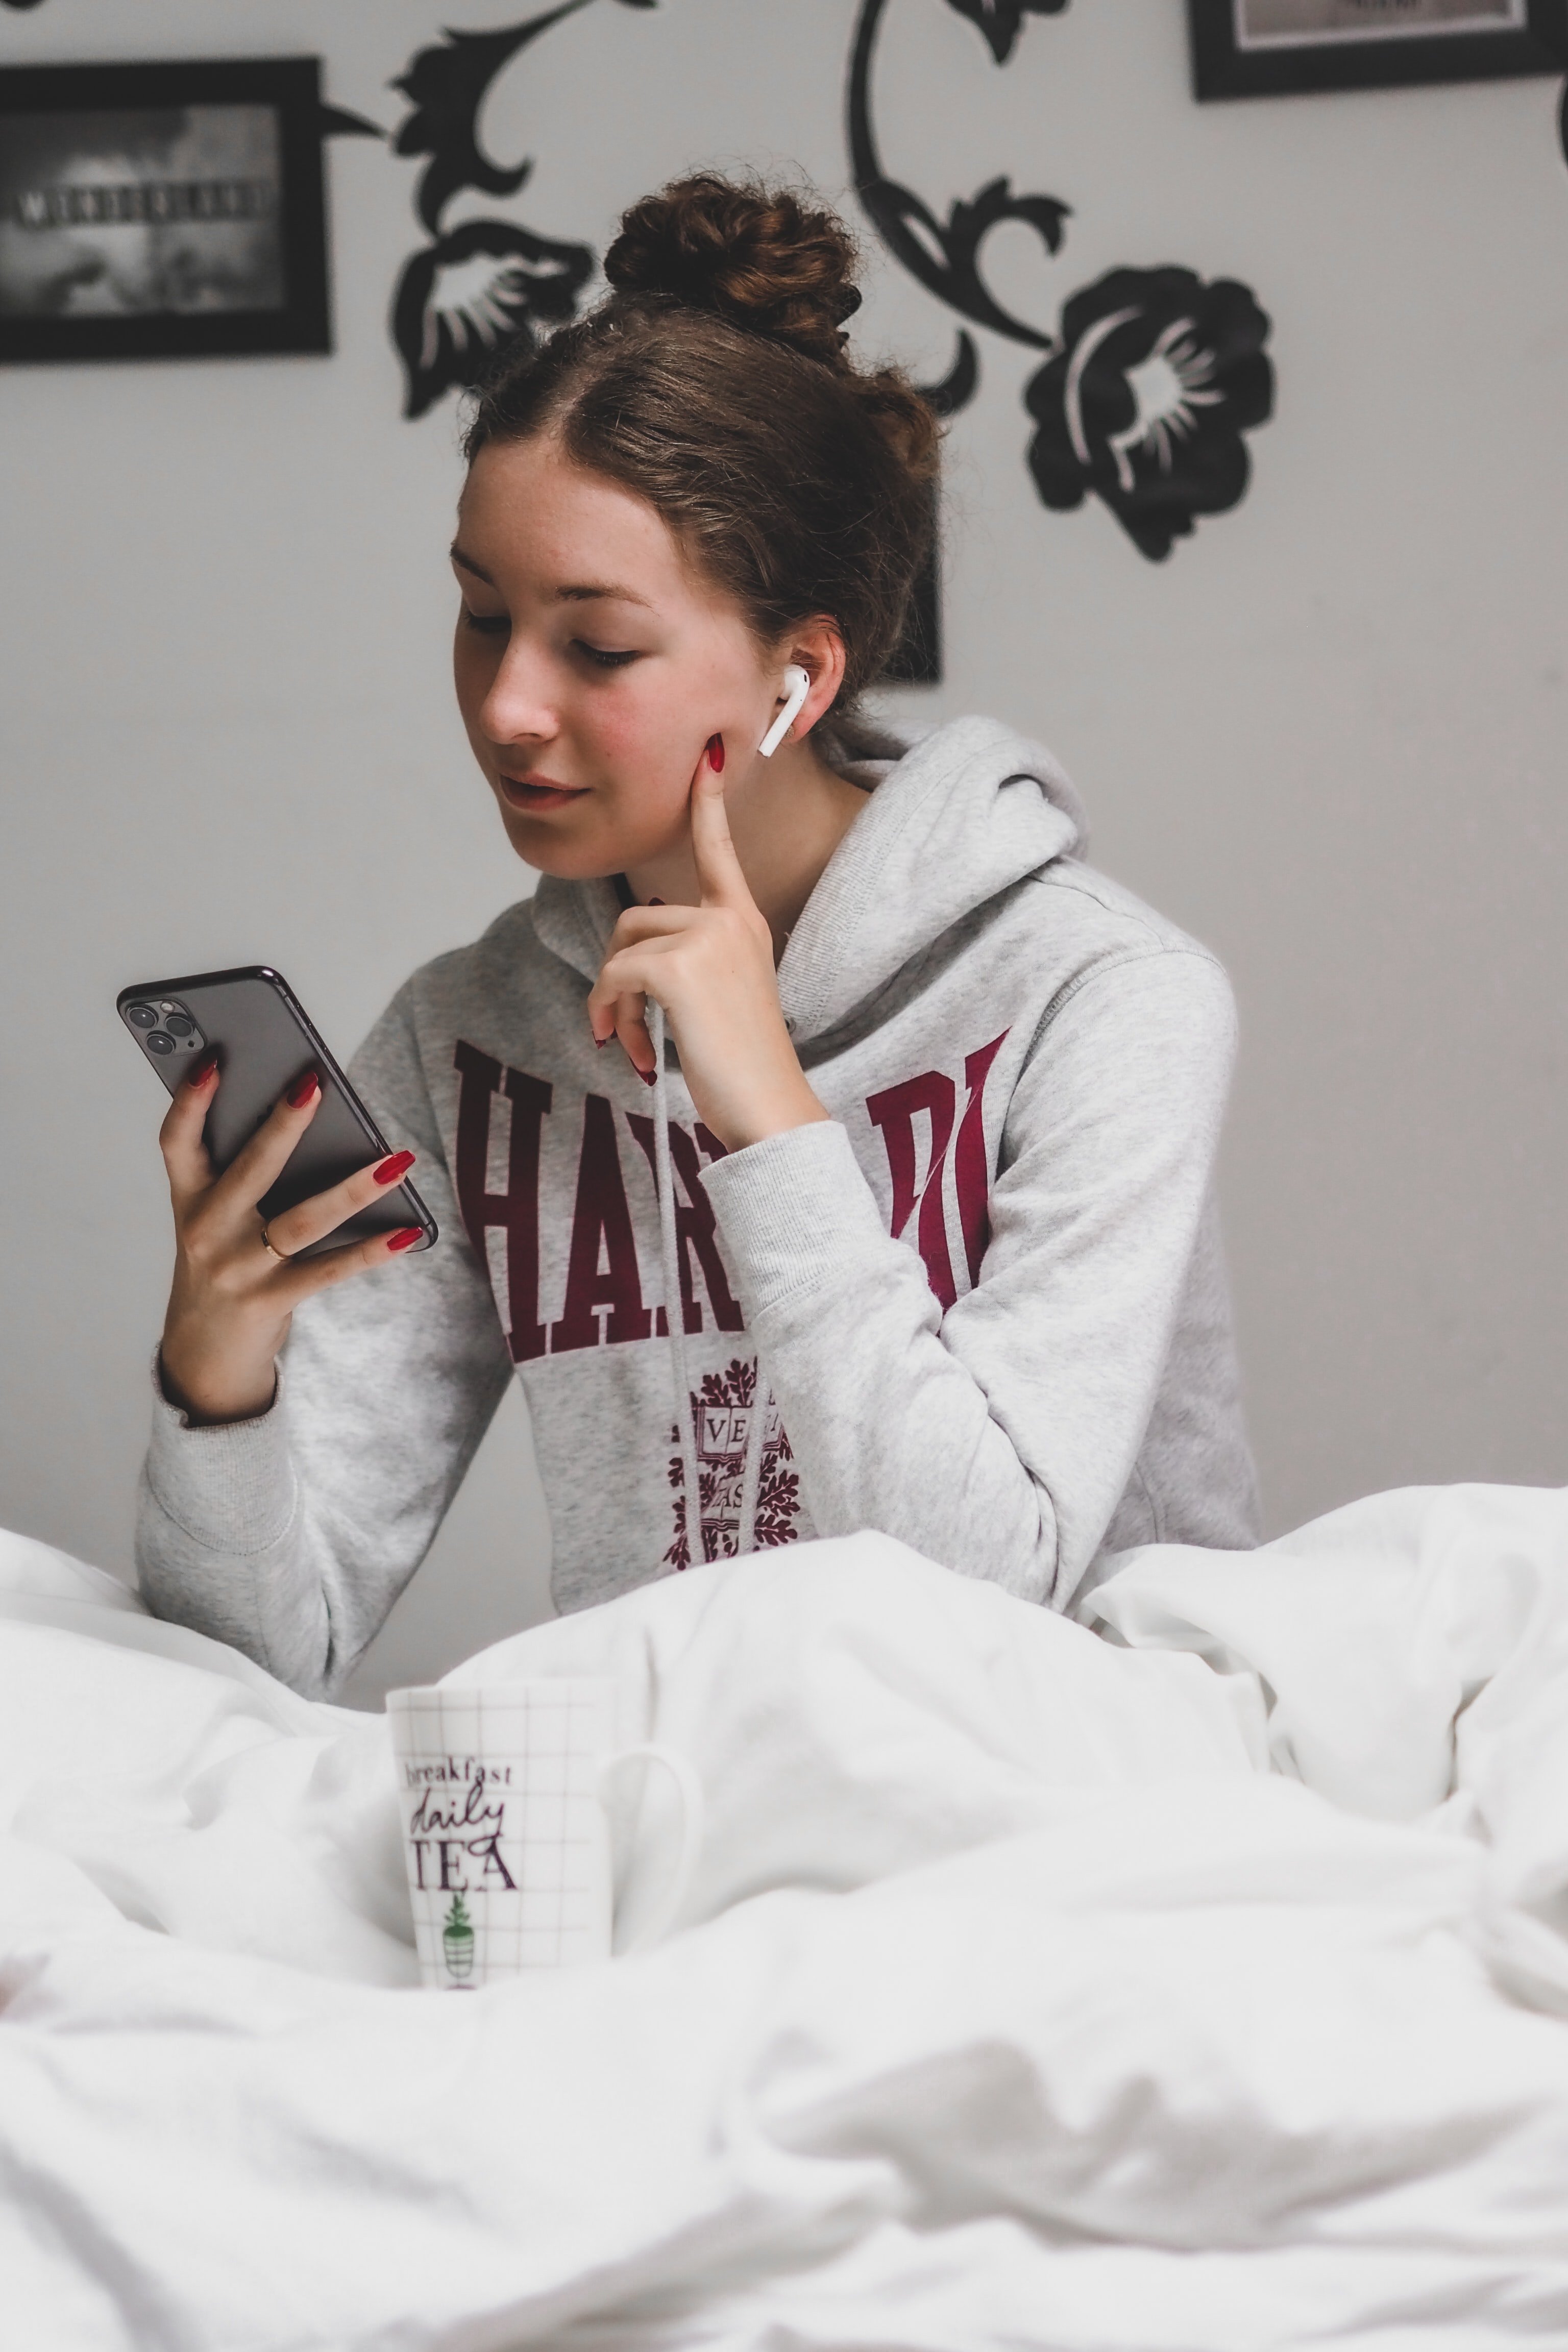 Una adolescente mira con atención su celular. | Foto: Unsplash